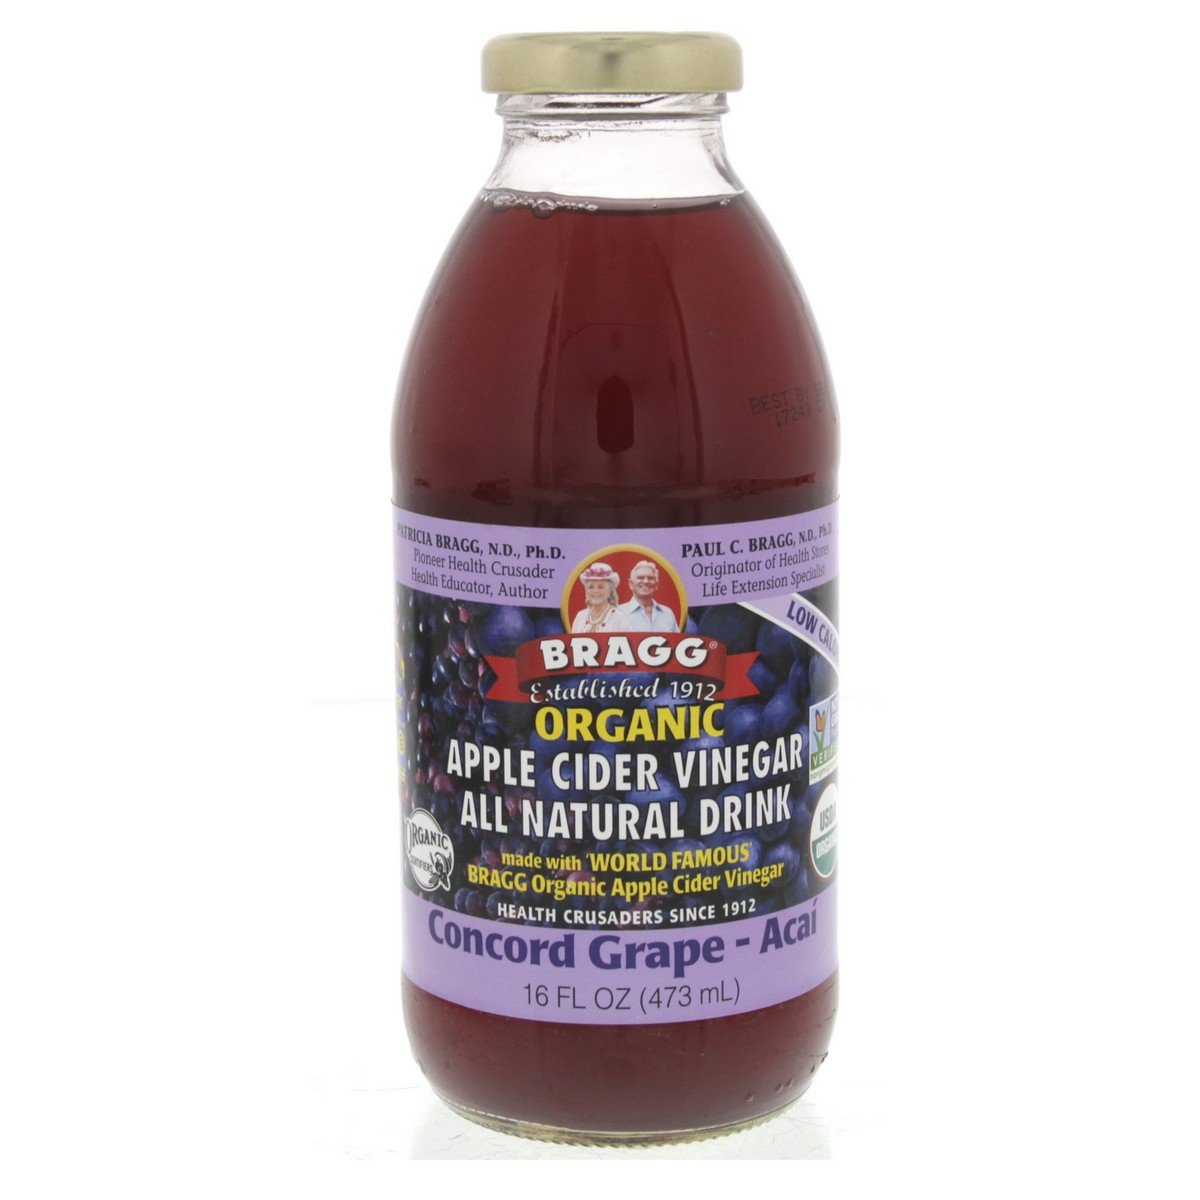 Bragg Organic Apple Cider Vinegar Concord Grape Acai 473 ml